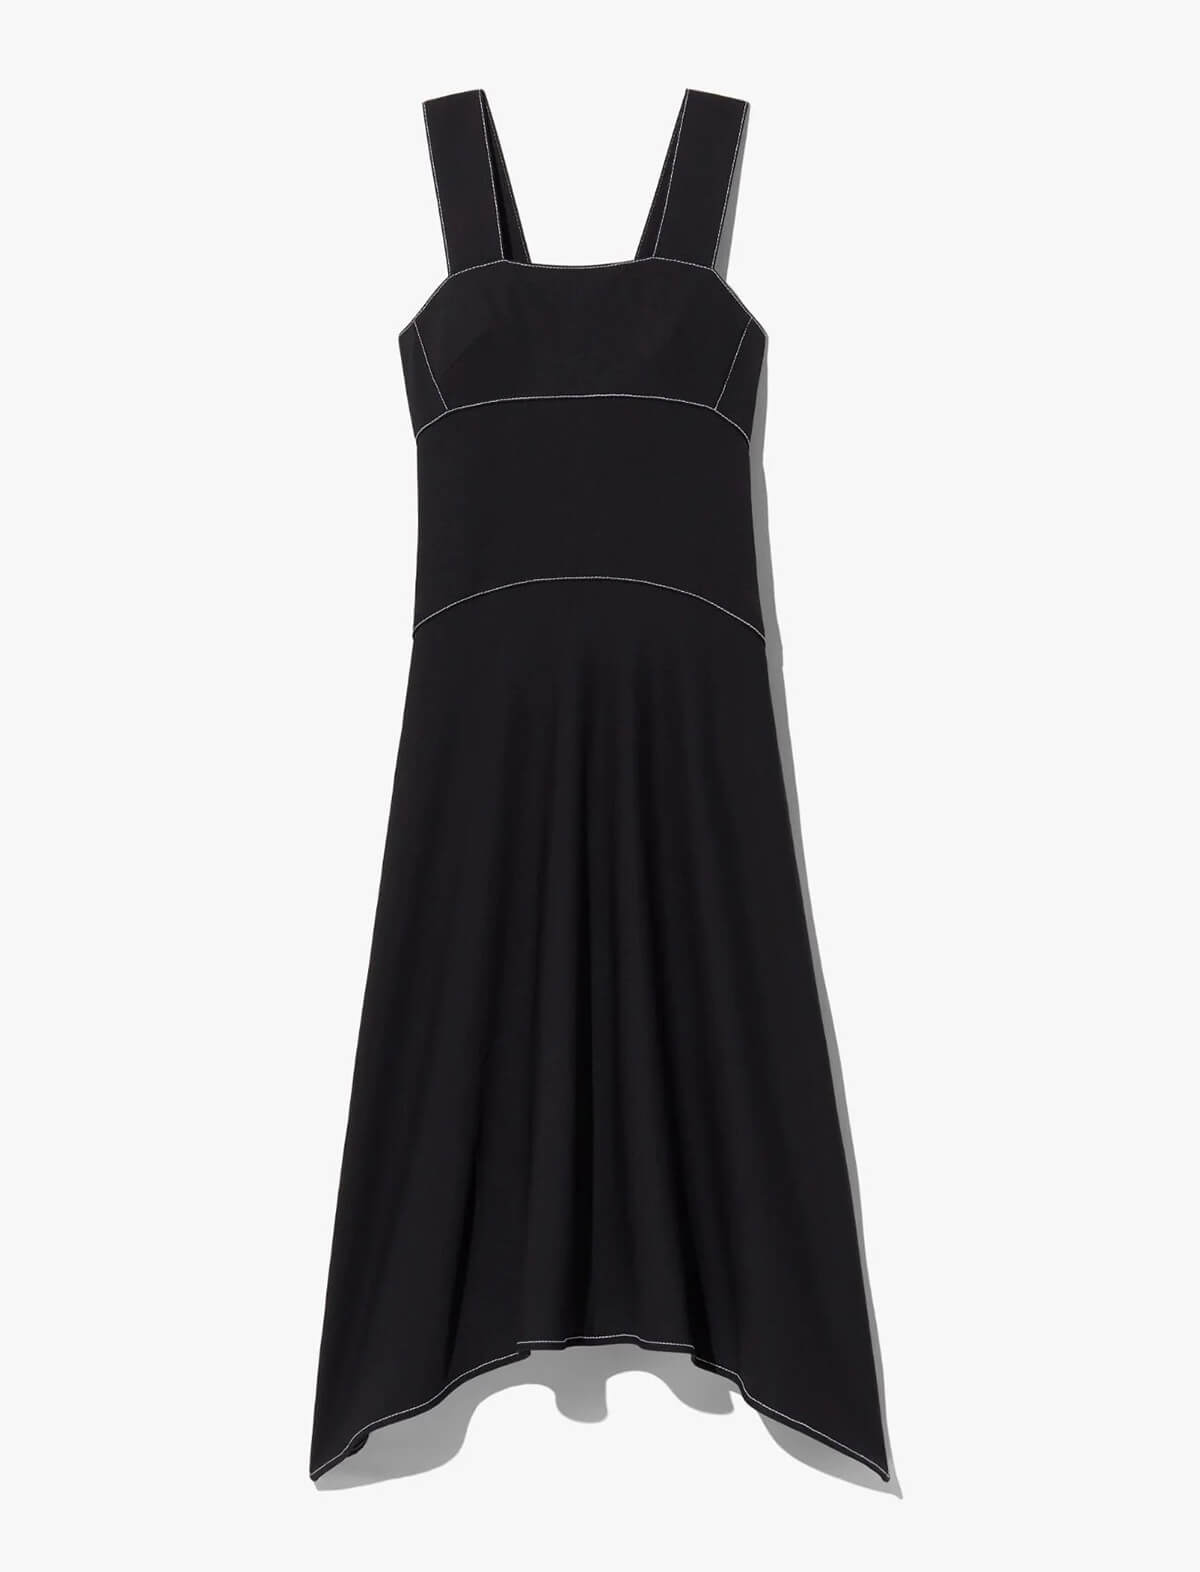 PROENZA SCHOULER WHITE LABEL Rumpled Piqué Dress in Black